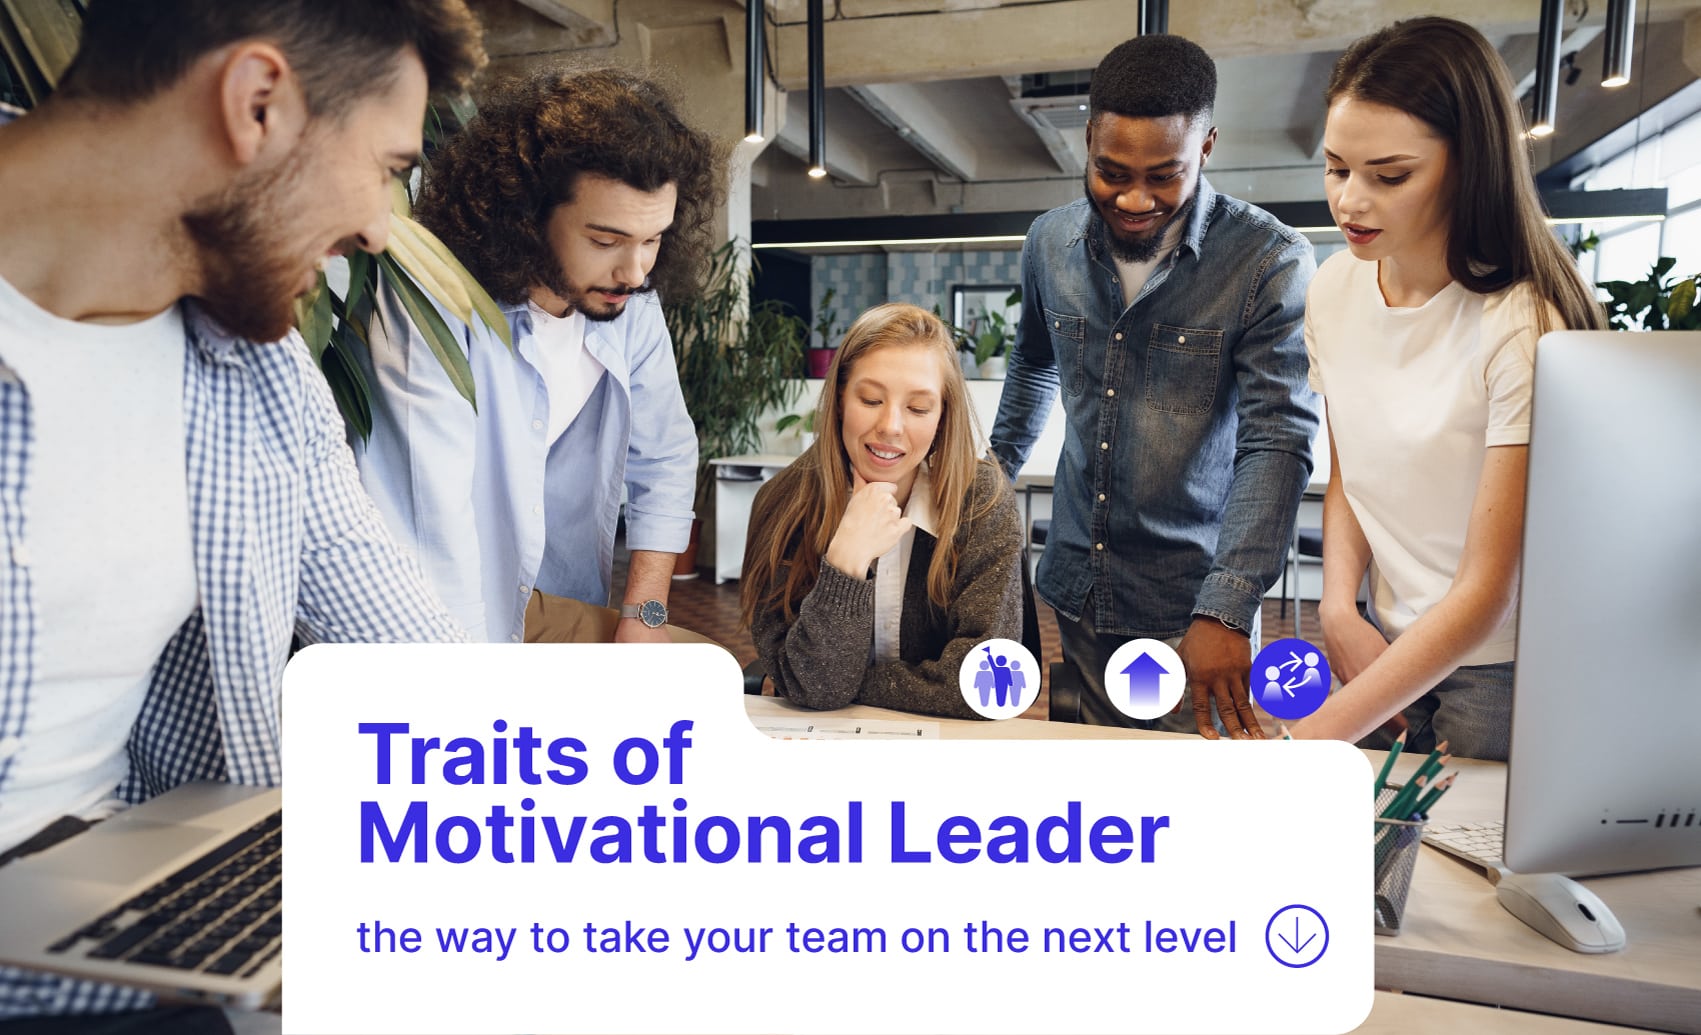 Motivational leader, how to become motivational leader, leadership, teamwork, naviminds